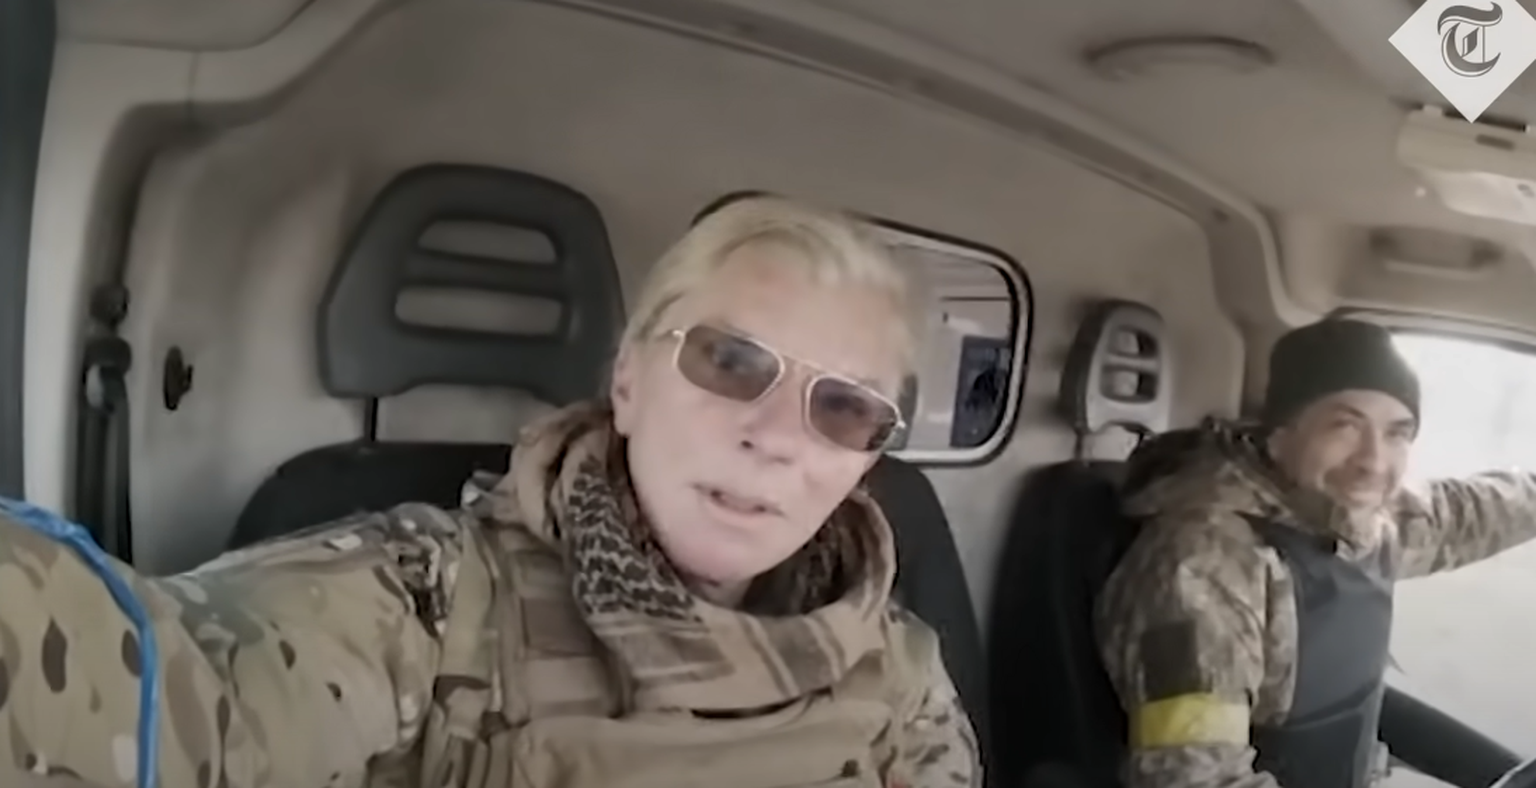 Ukraina parameedik Julia Pajevska ja autojuht langesid 16. märtsil Mariupoli lähedal venelaste kätte. Pajevska vabanes 17. juunil. Naise sõnul piinasid venelased teda pidevalt